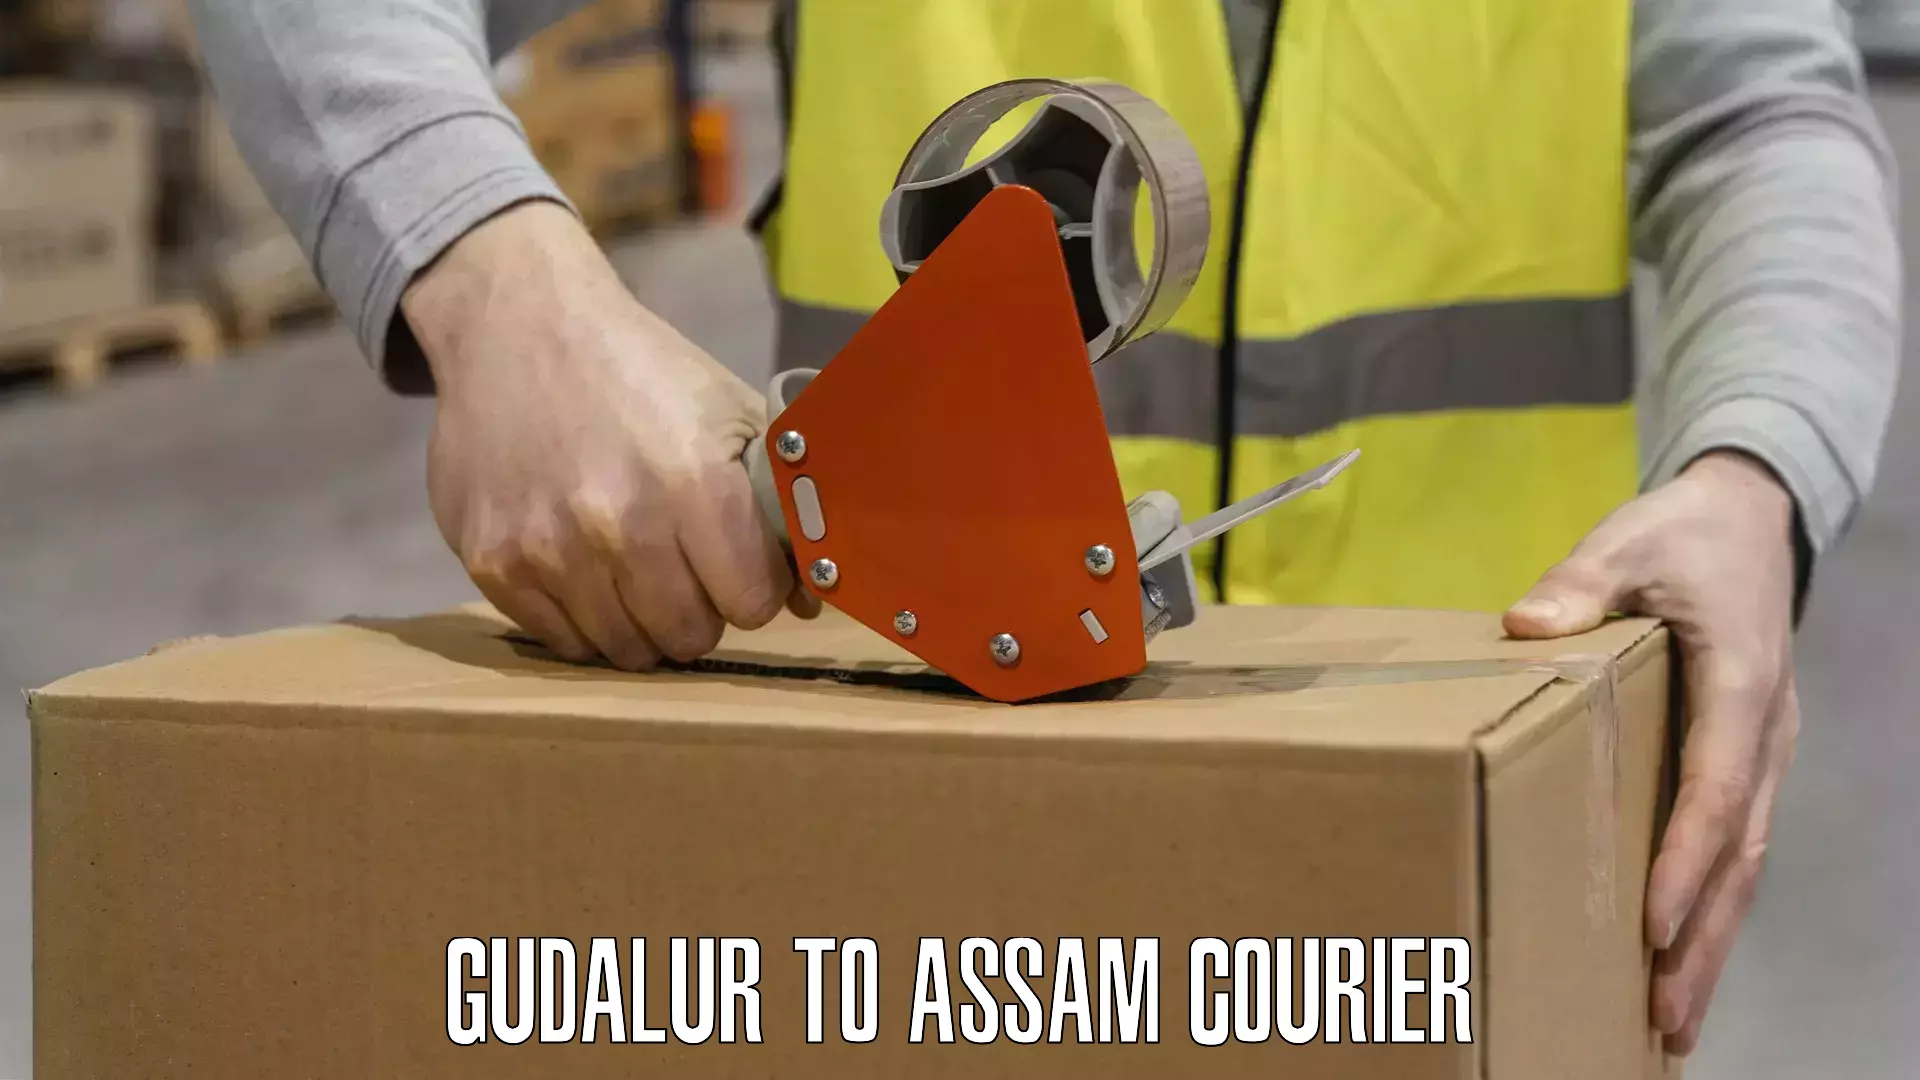 Courier service comparison Gudalur to Amoni